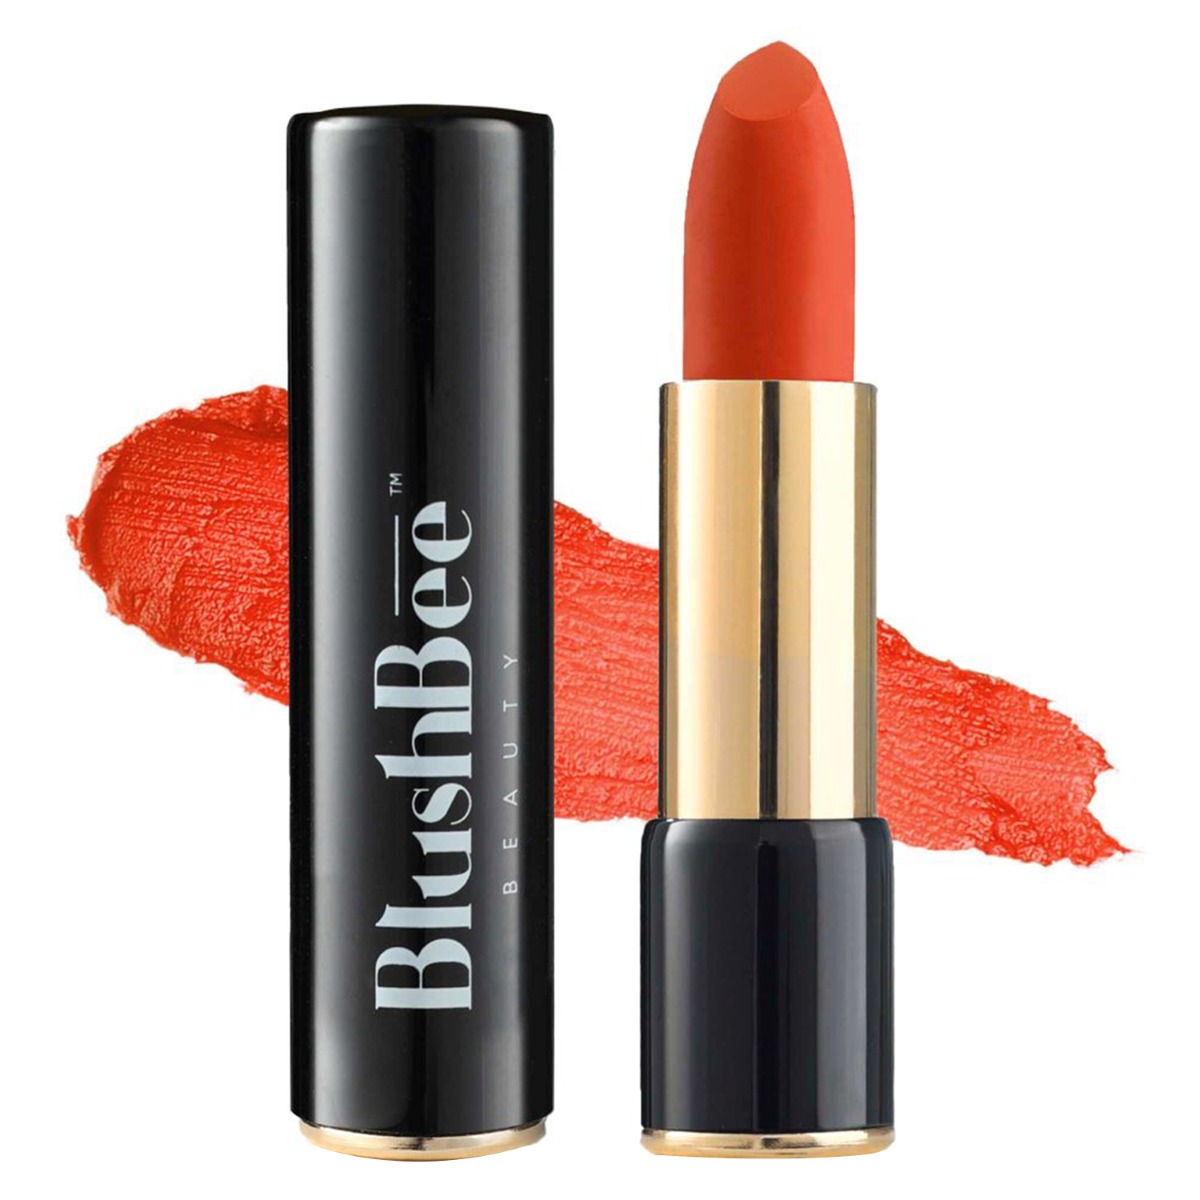 BlushBee Organic Beauty Lip Nourishing Organic Vegan Lipstick, 4.2gm-Sunset Zone Orange